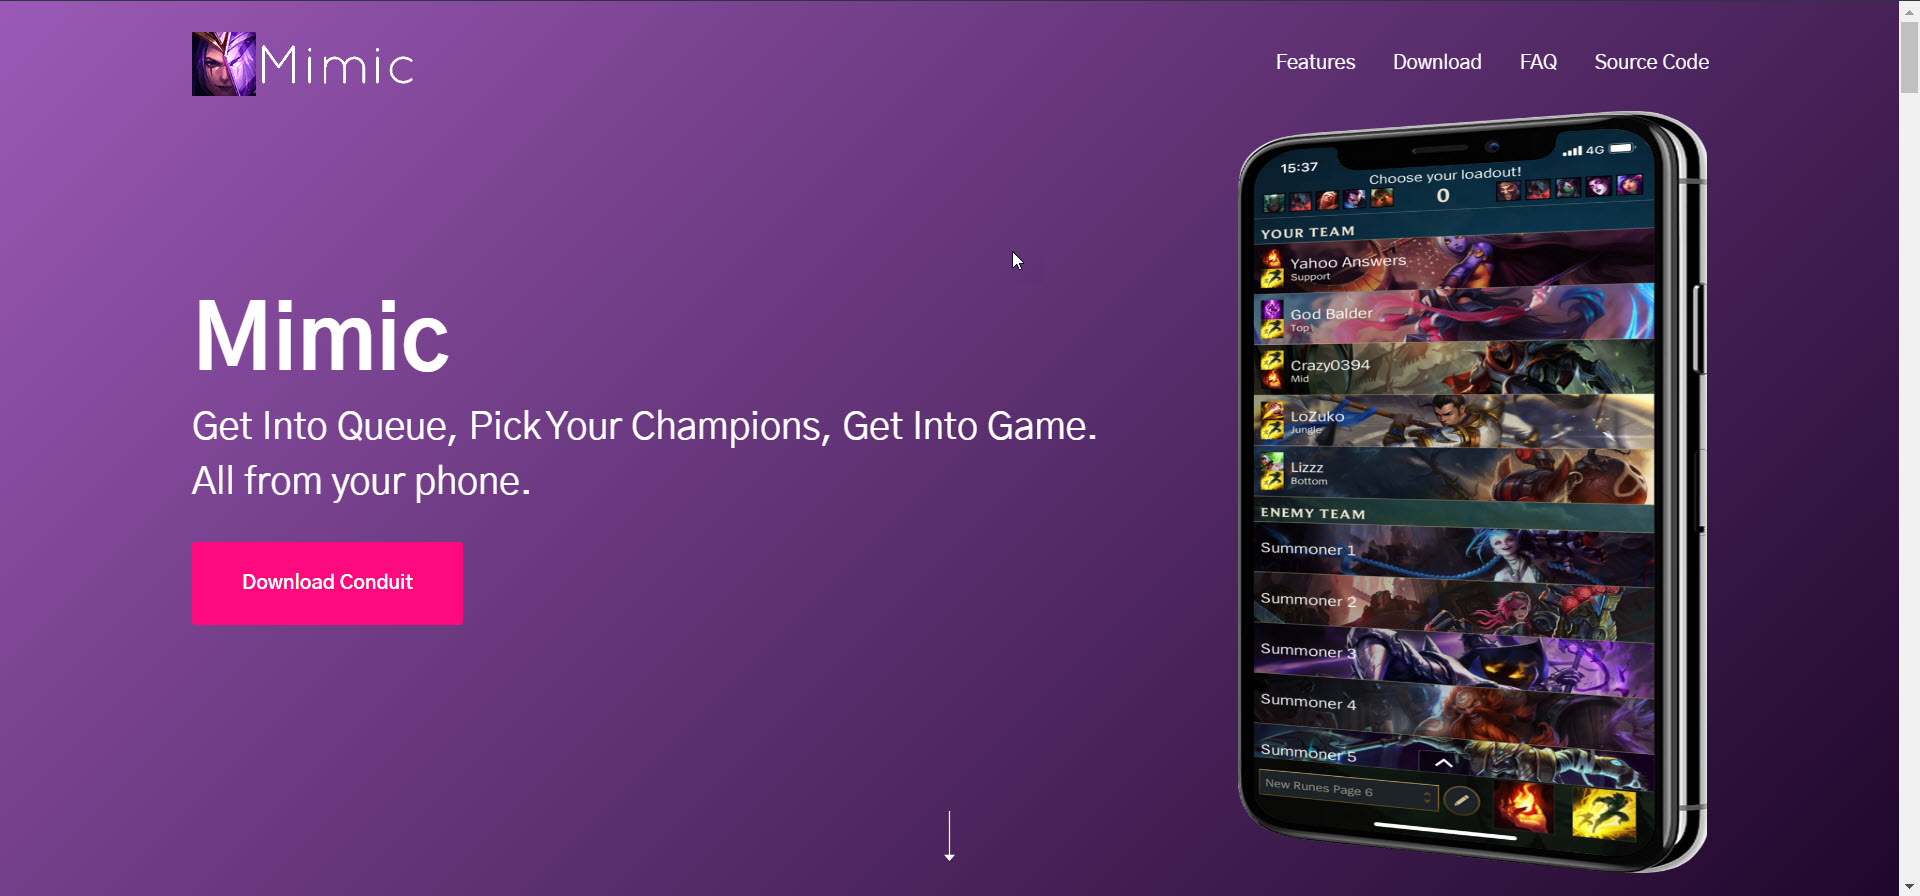 Mimic League of Legends companion app